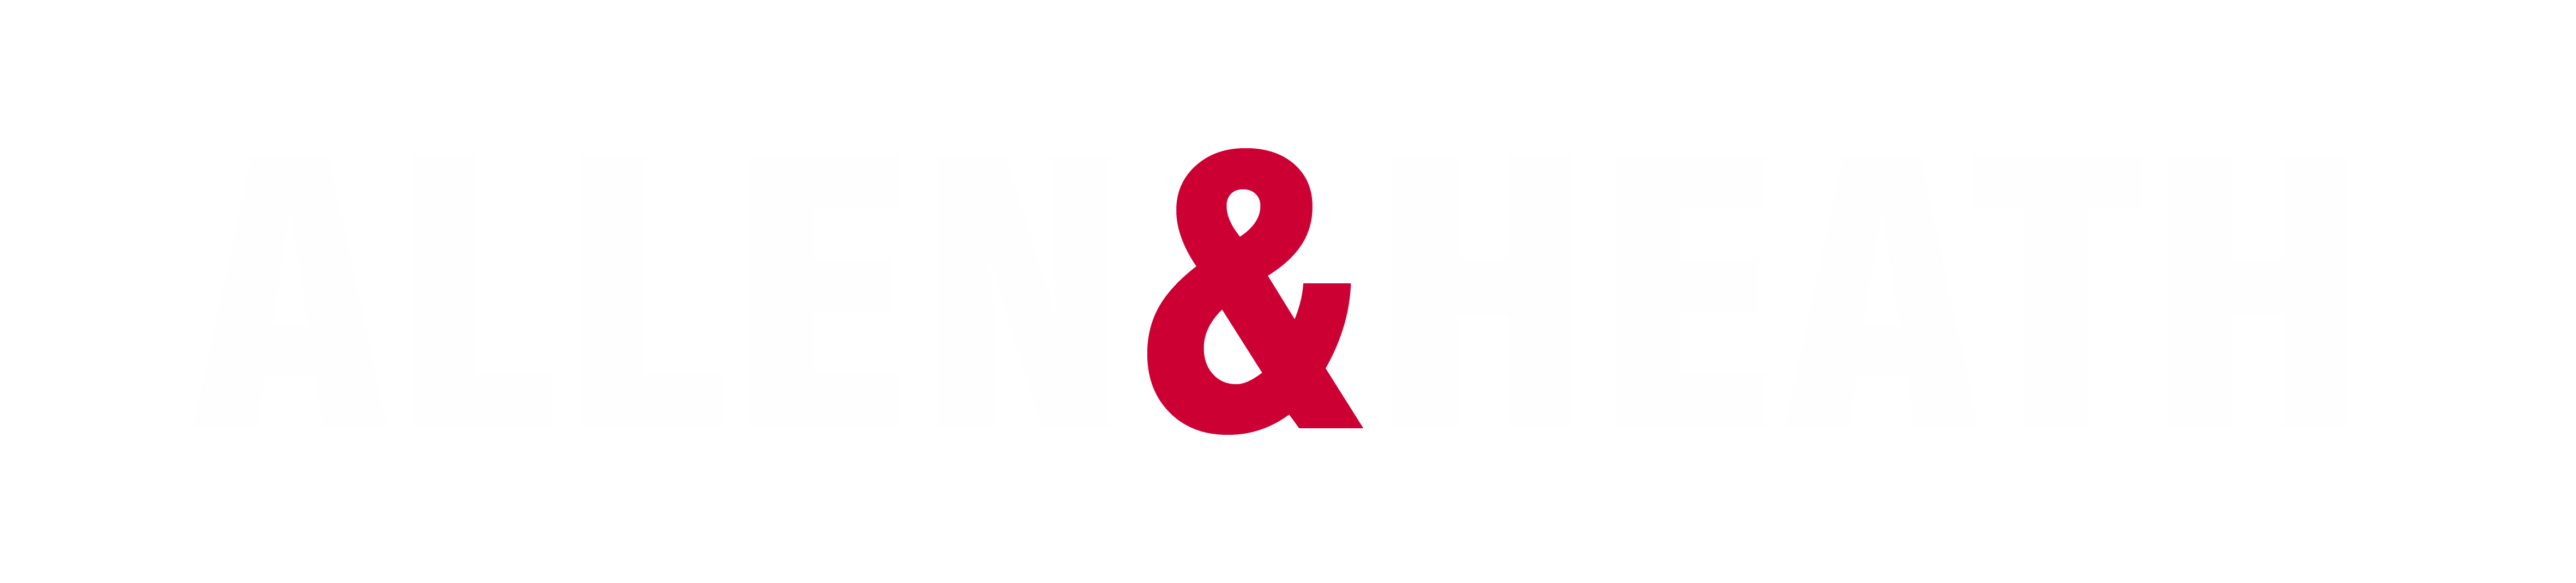 allen and heath logo